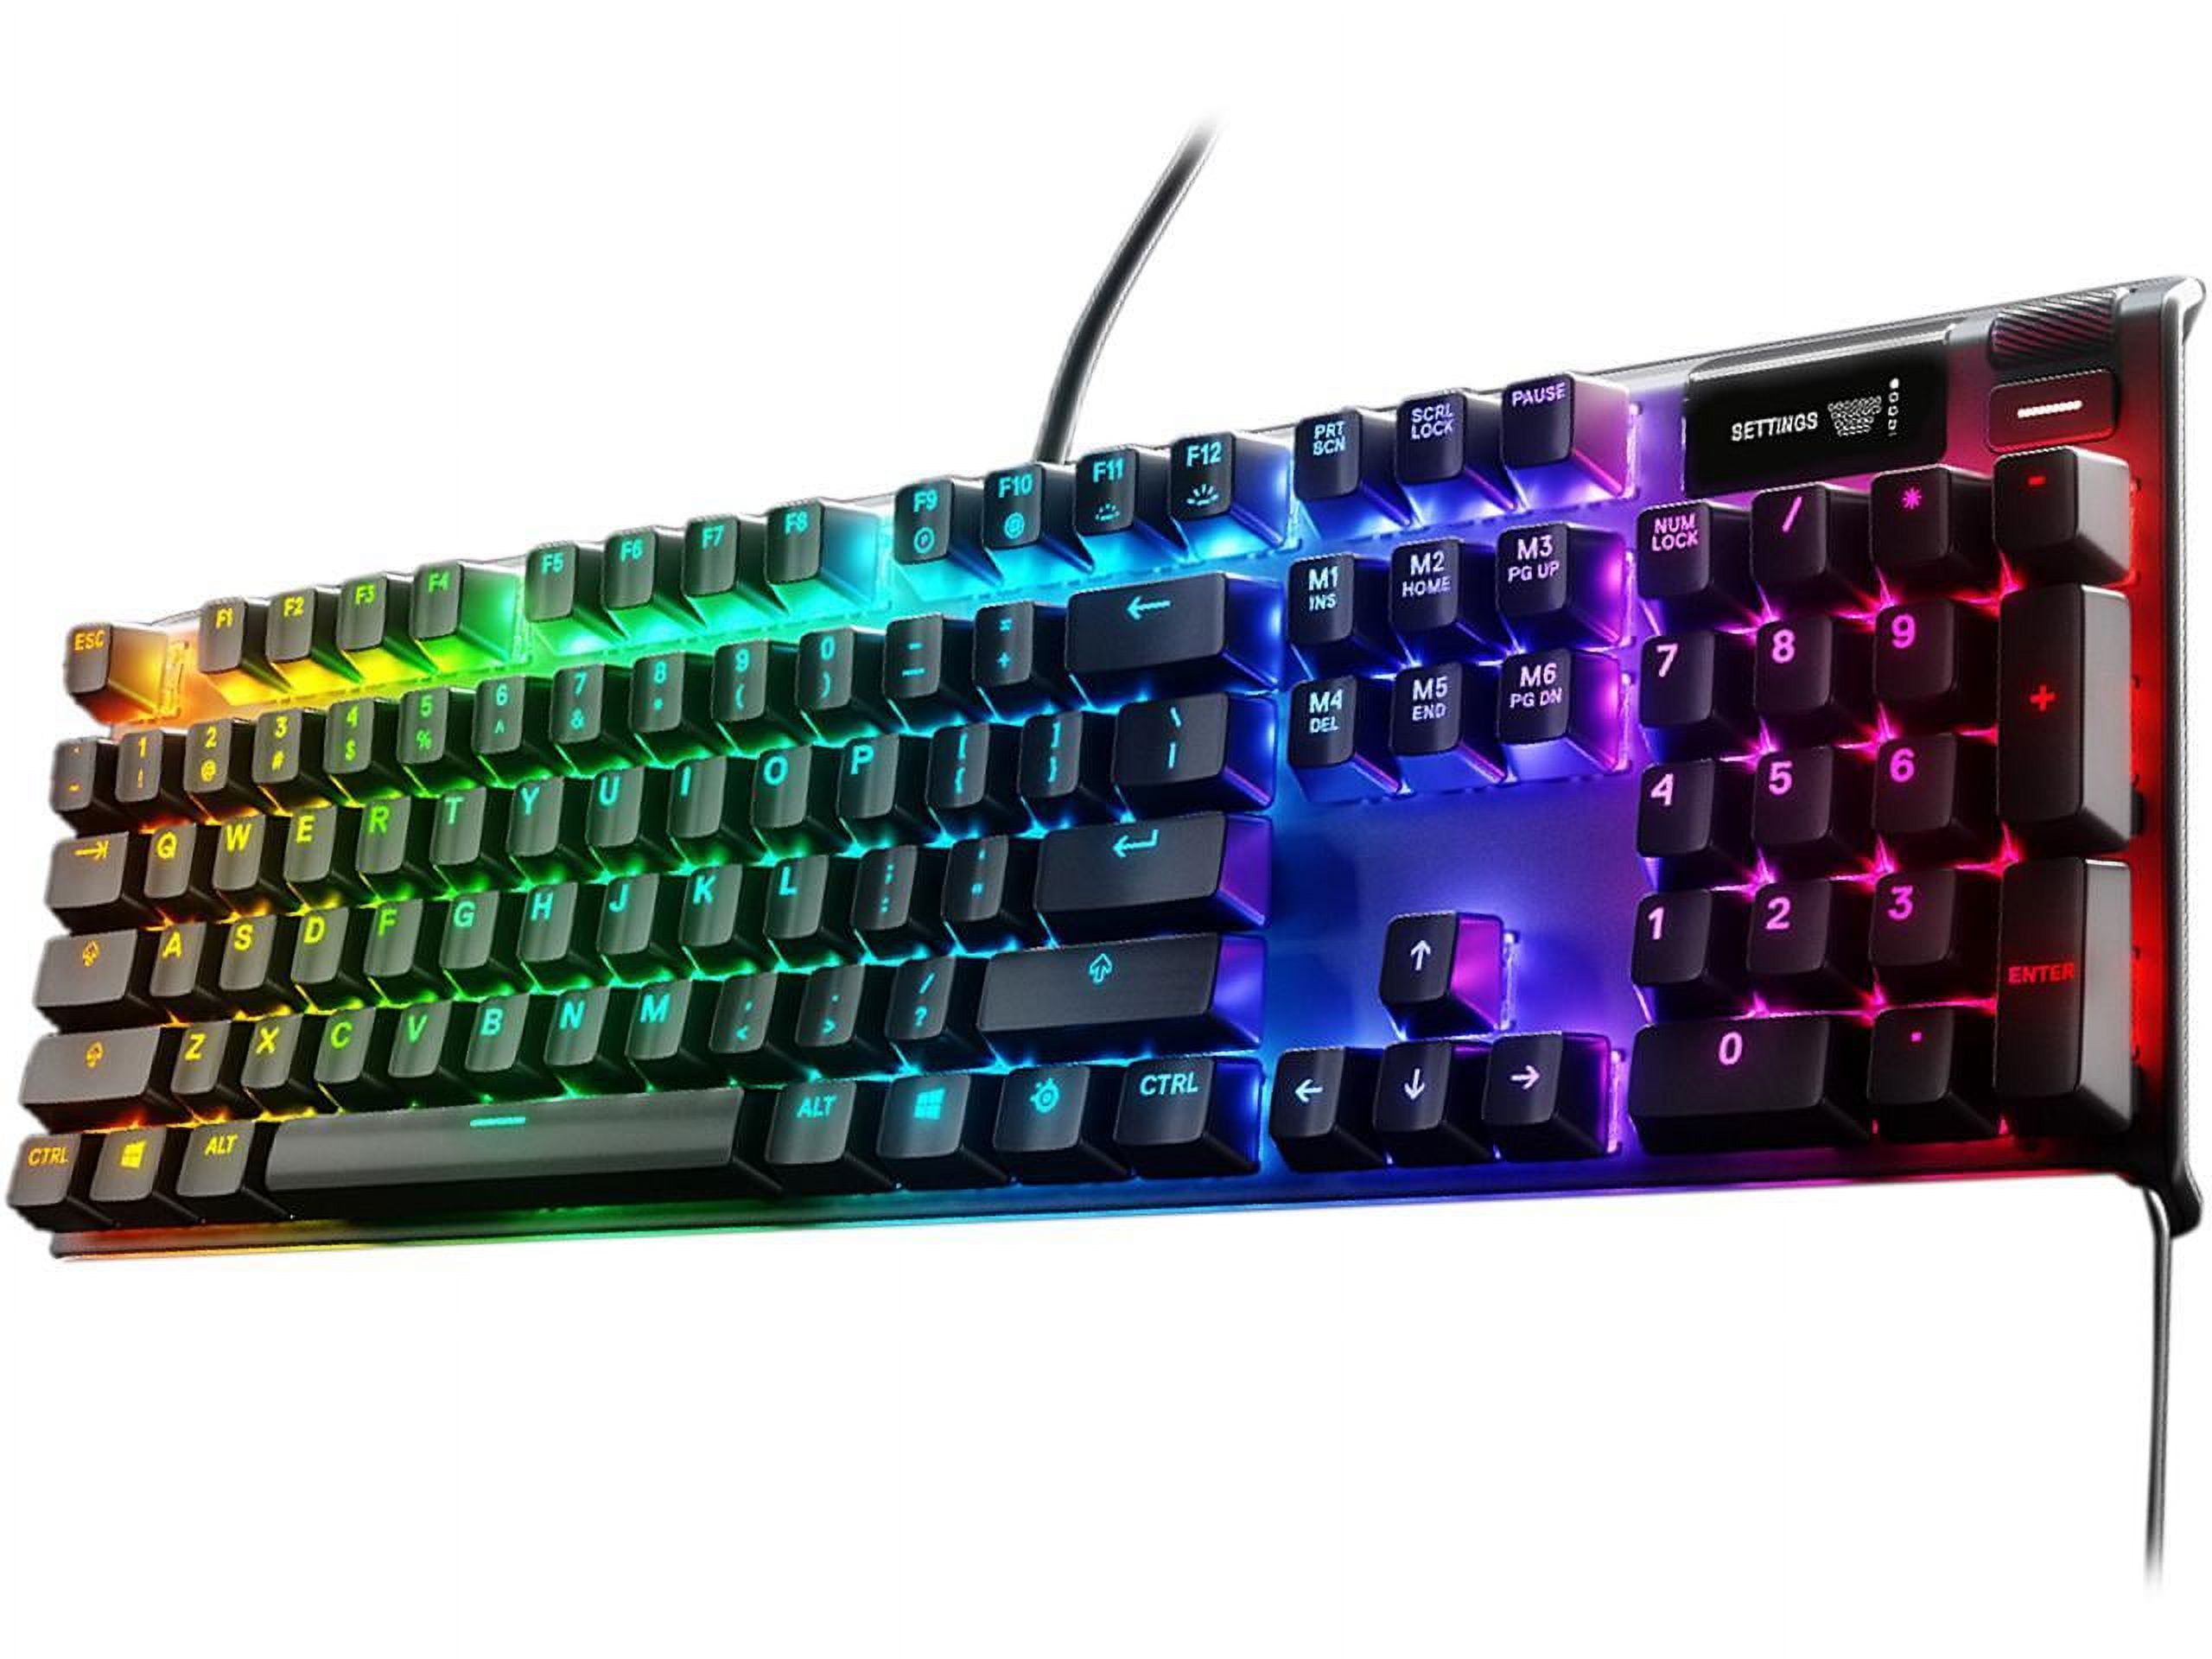 SteelSeries Apex 7 Mechanical Gaming Keyboard 